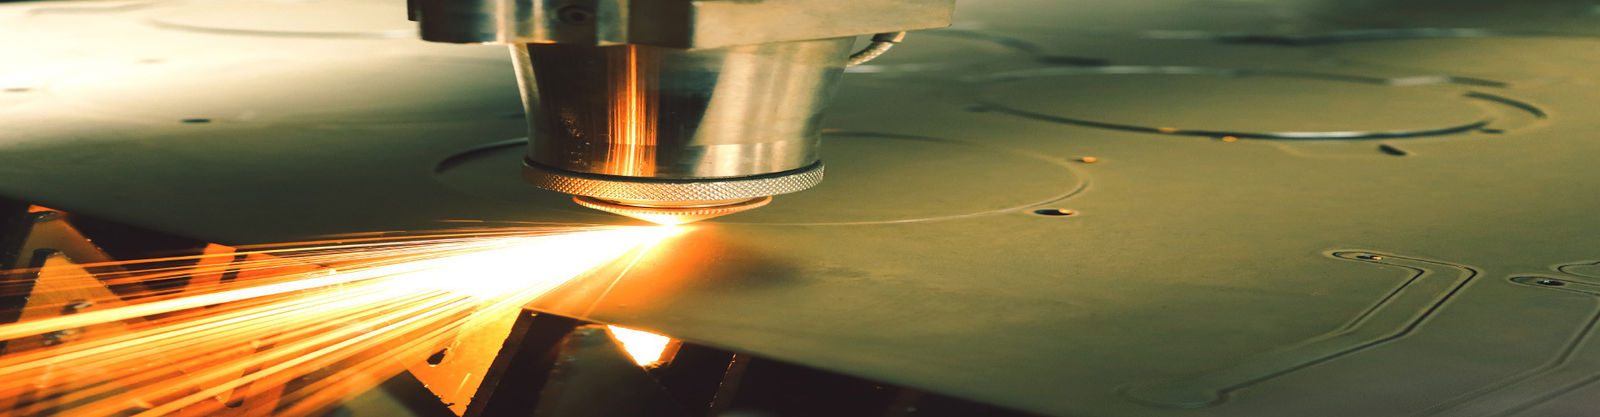 calidad Fabricación de chapa de acero inoxidable fábrica